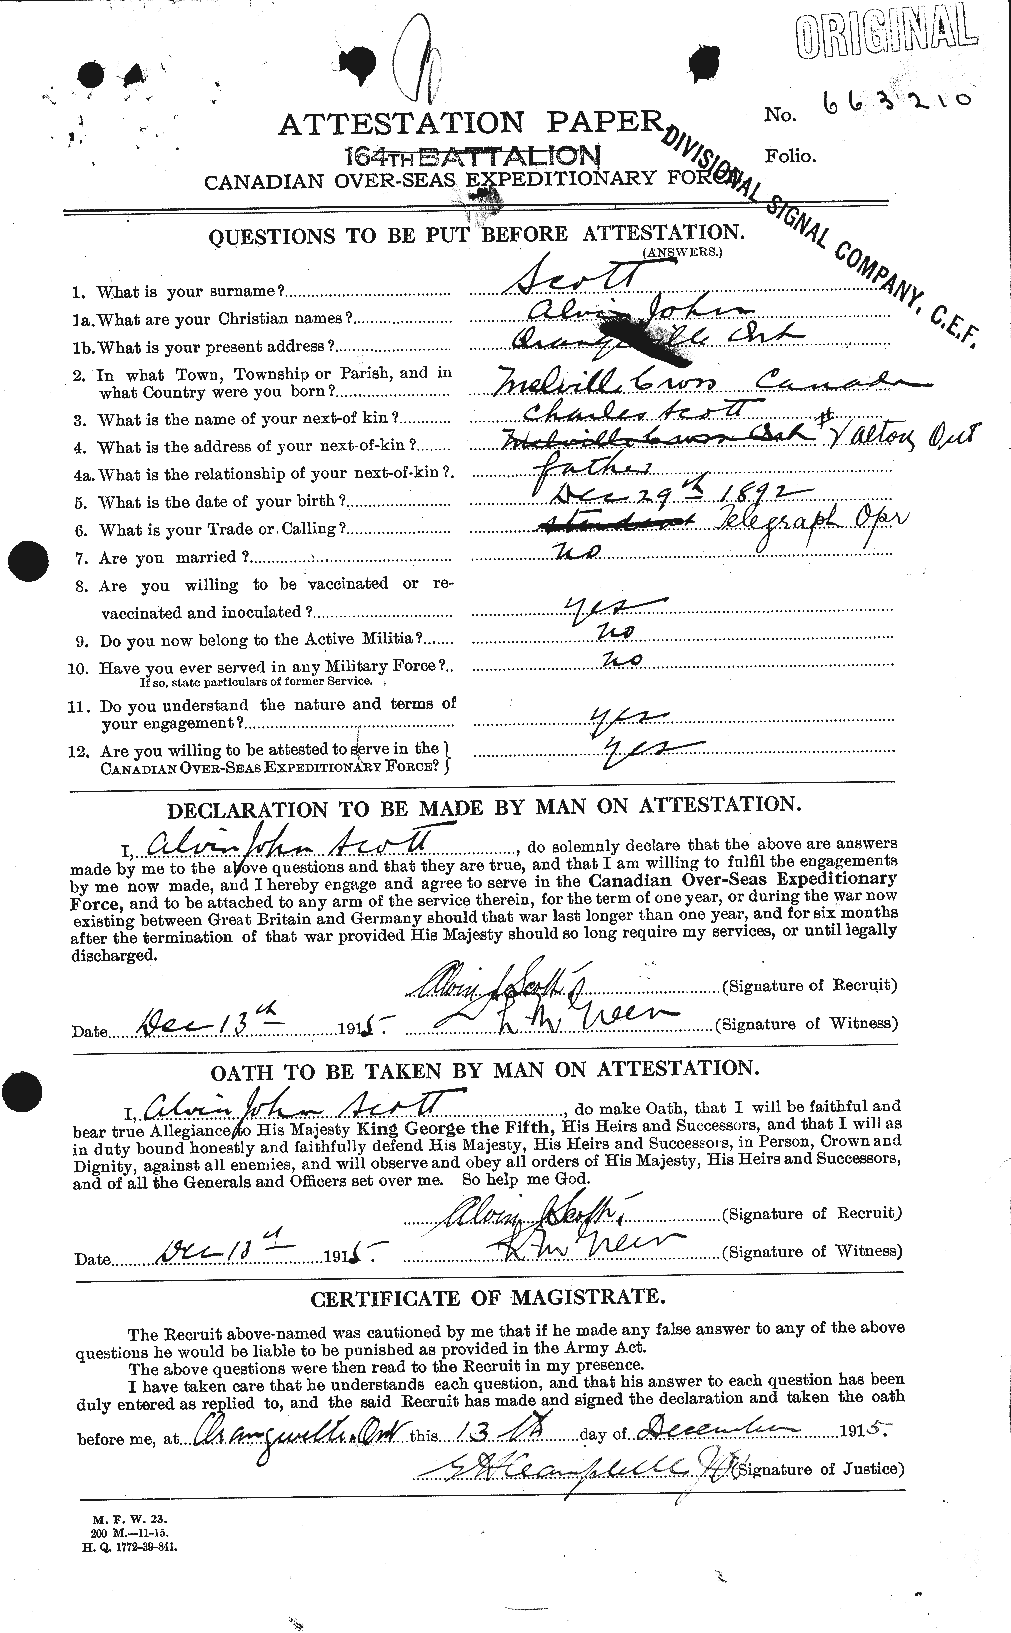 Dossiers du Personnel de la Première Guerre mondiale - CEC 086566a